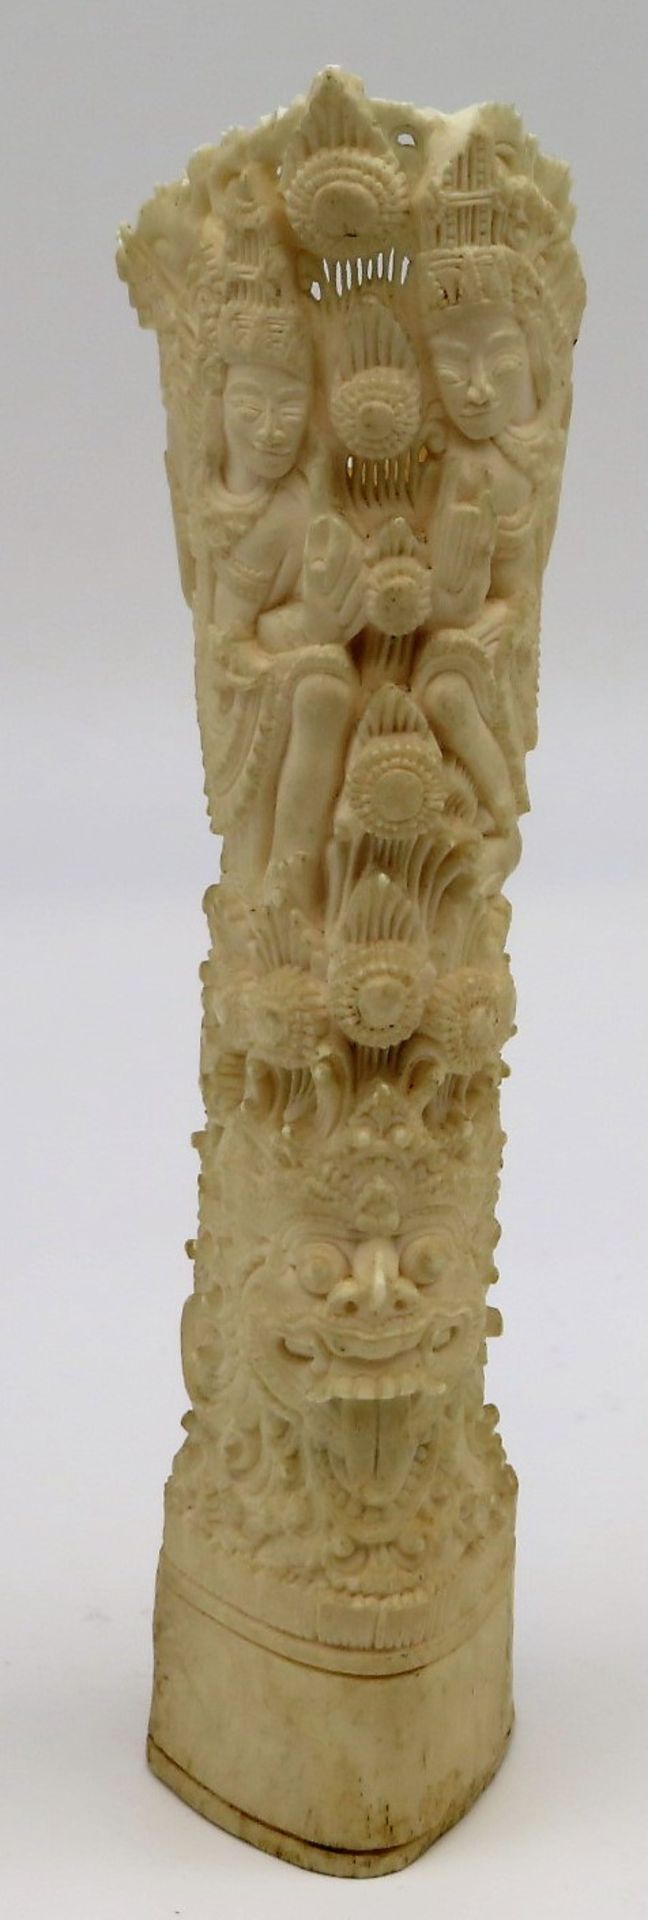 Schnitzerei, Indonesien, um 1900, Bein fein geschnitzt mit diversen hinduistischen Gottheiten, klei